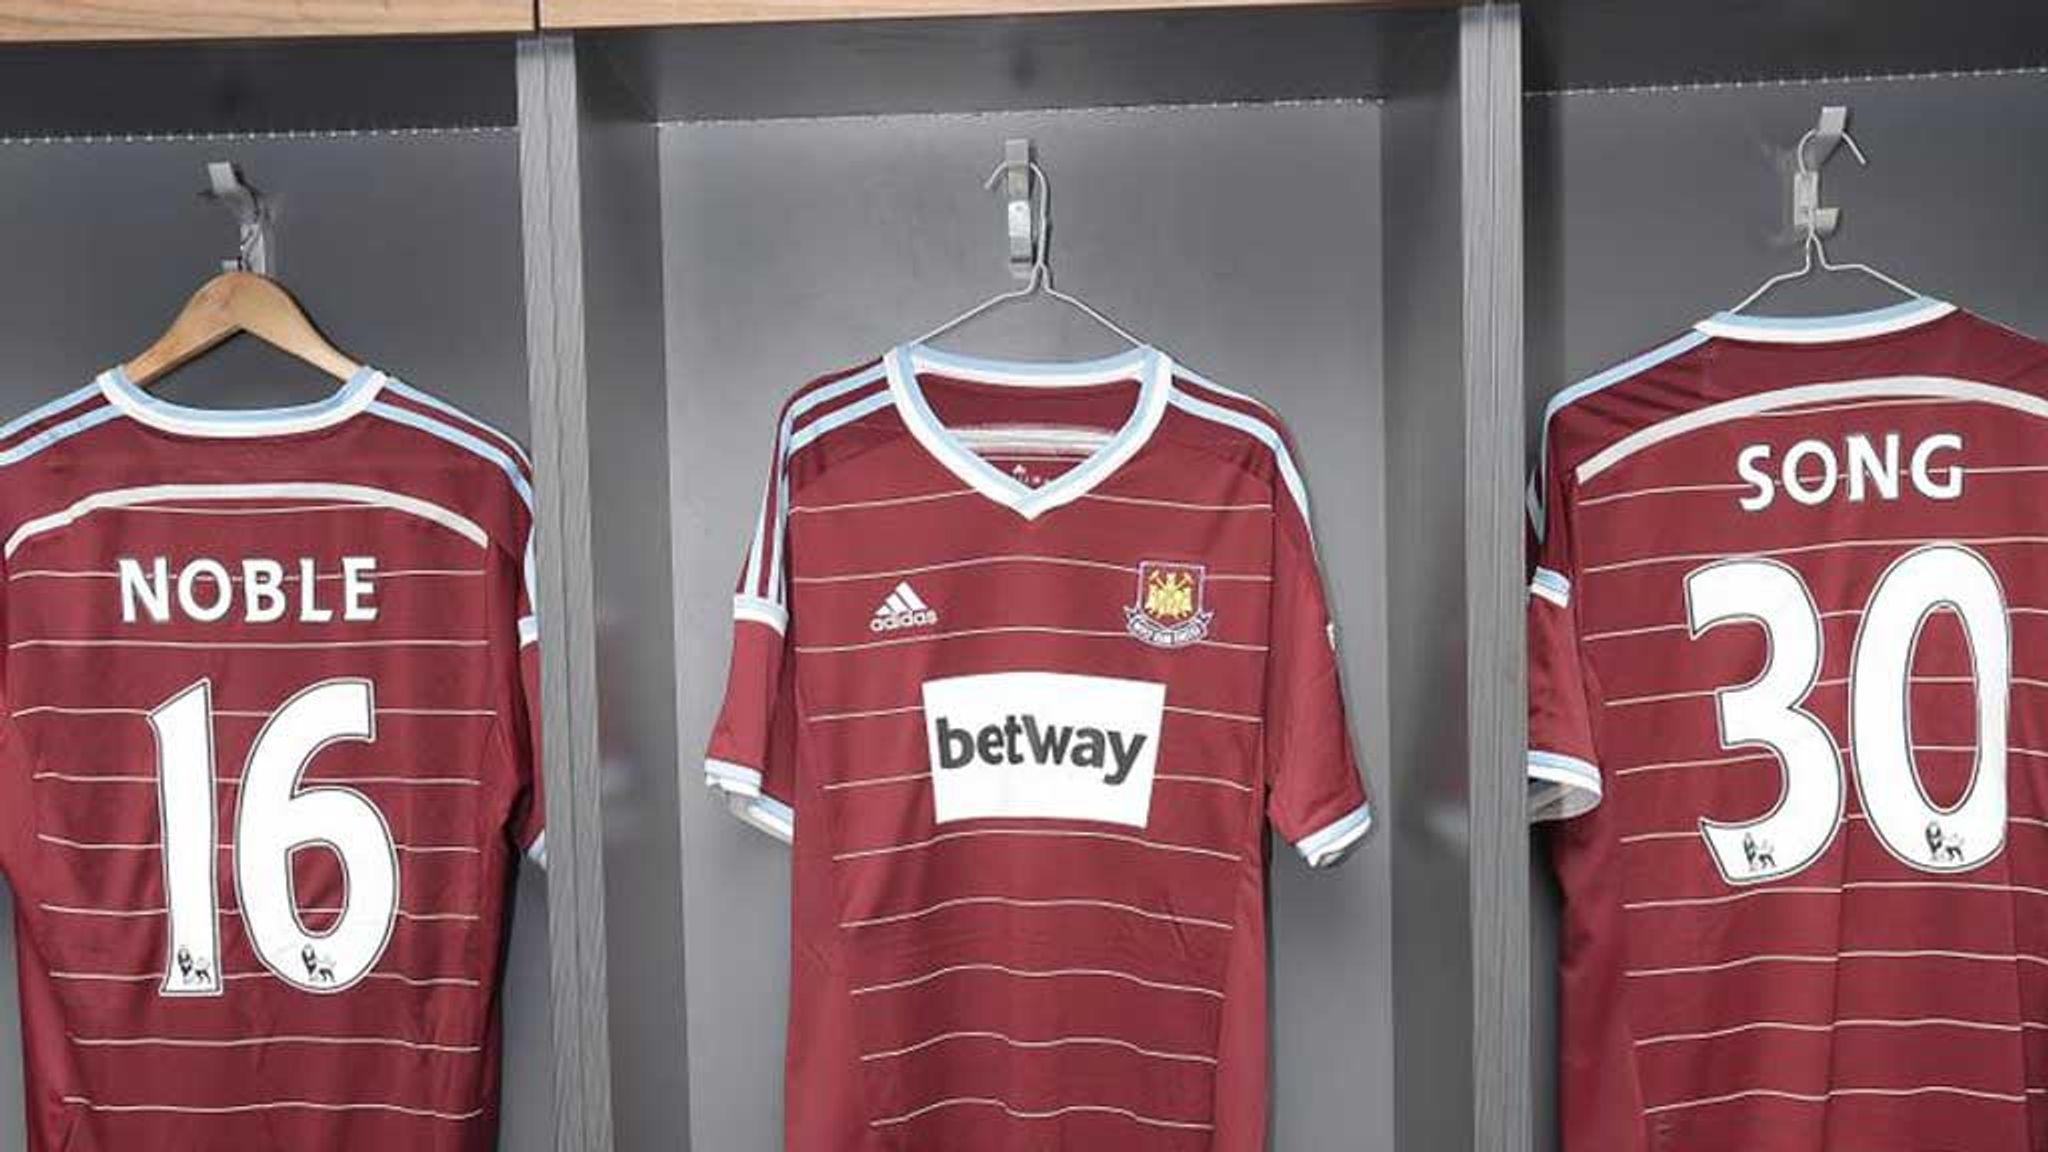 West ham united kit 2014/15